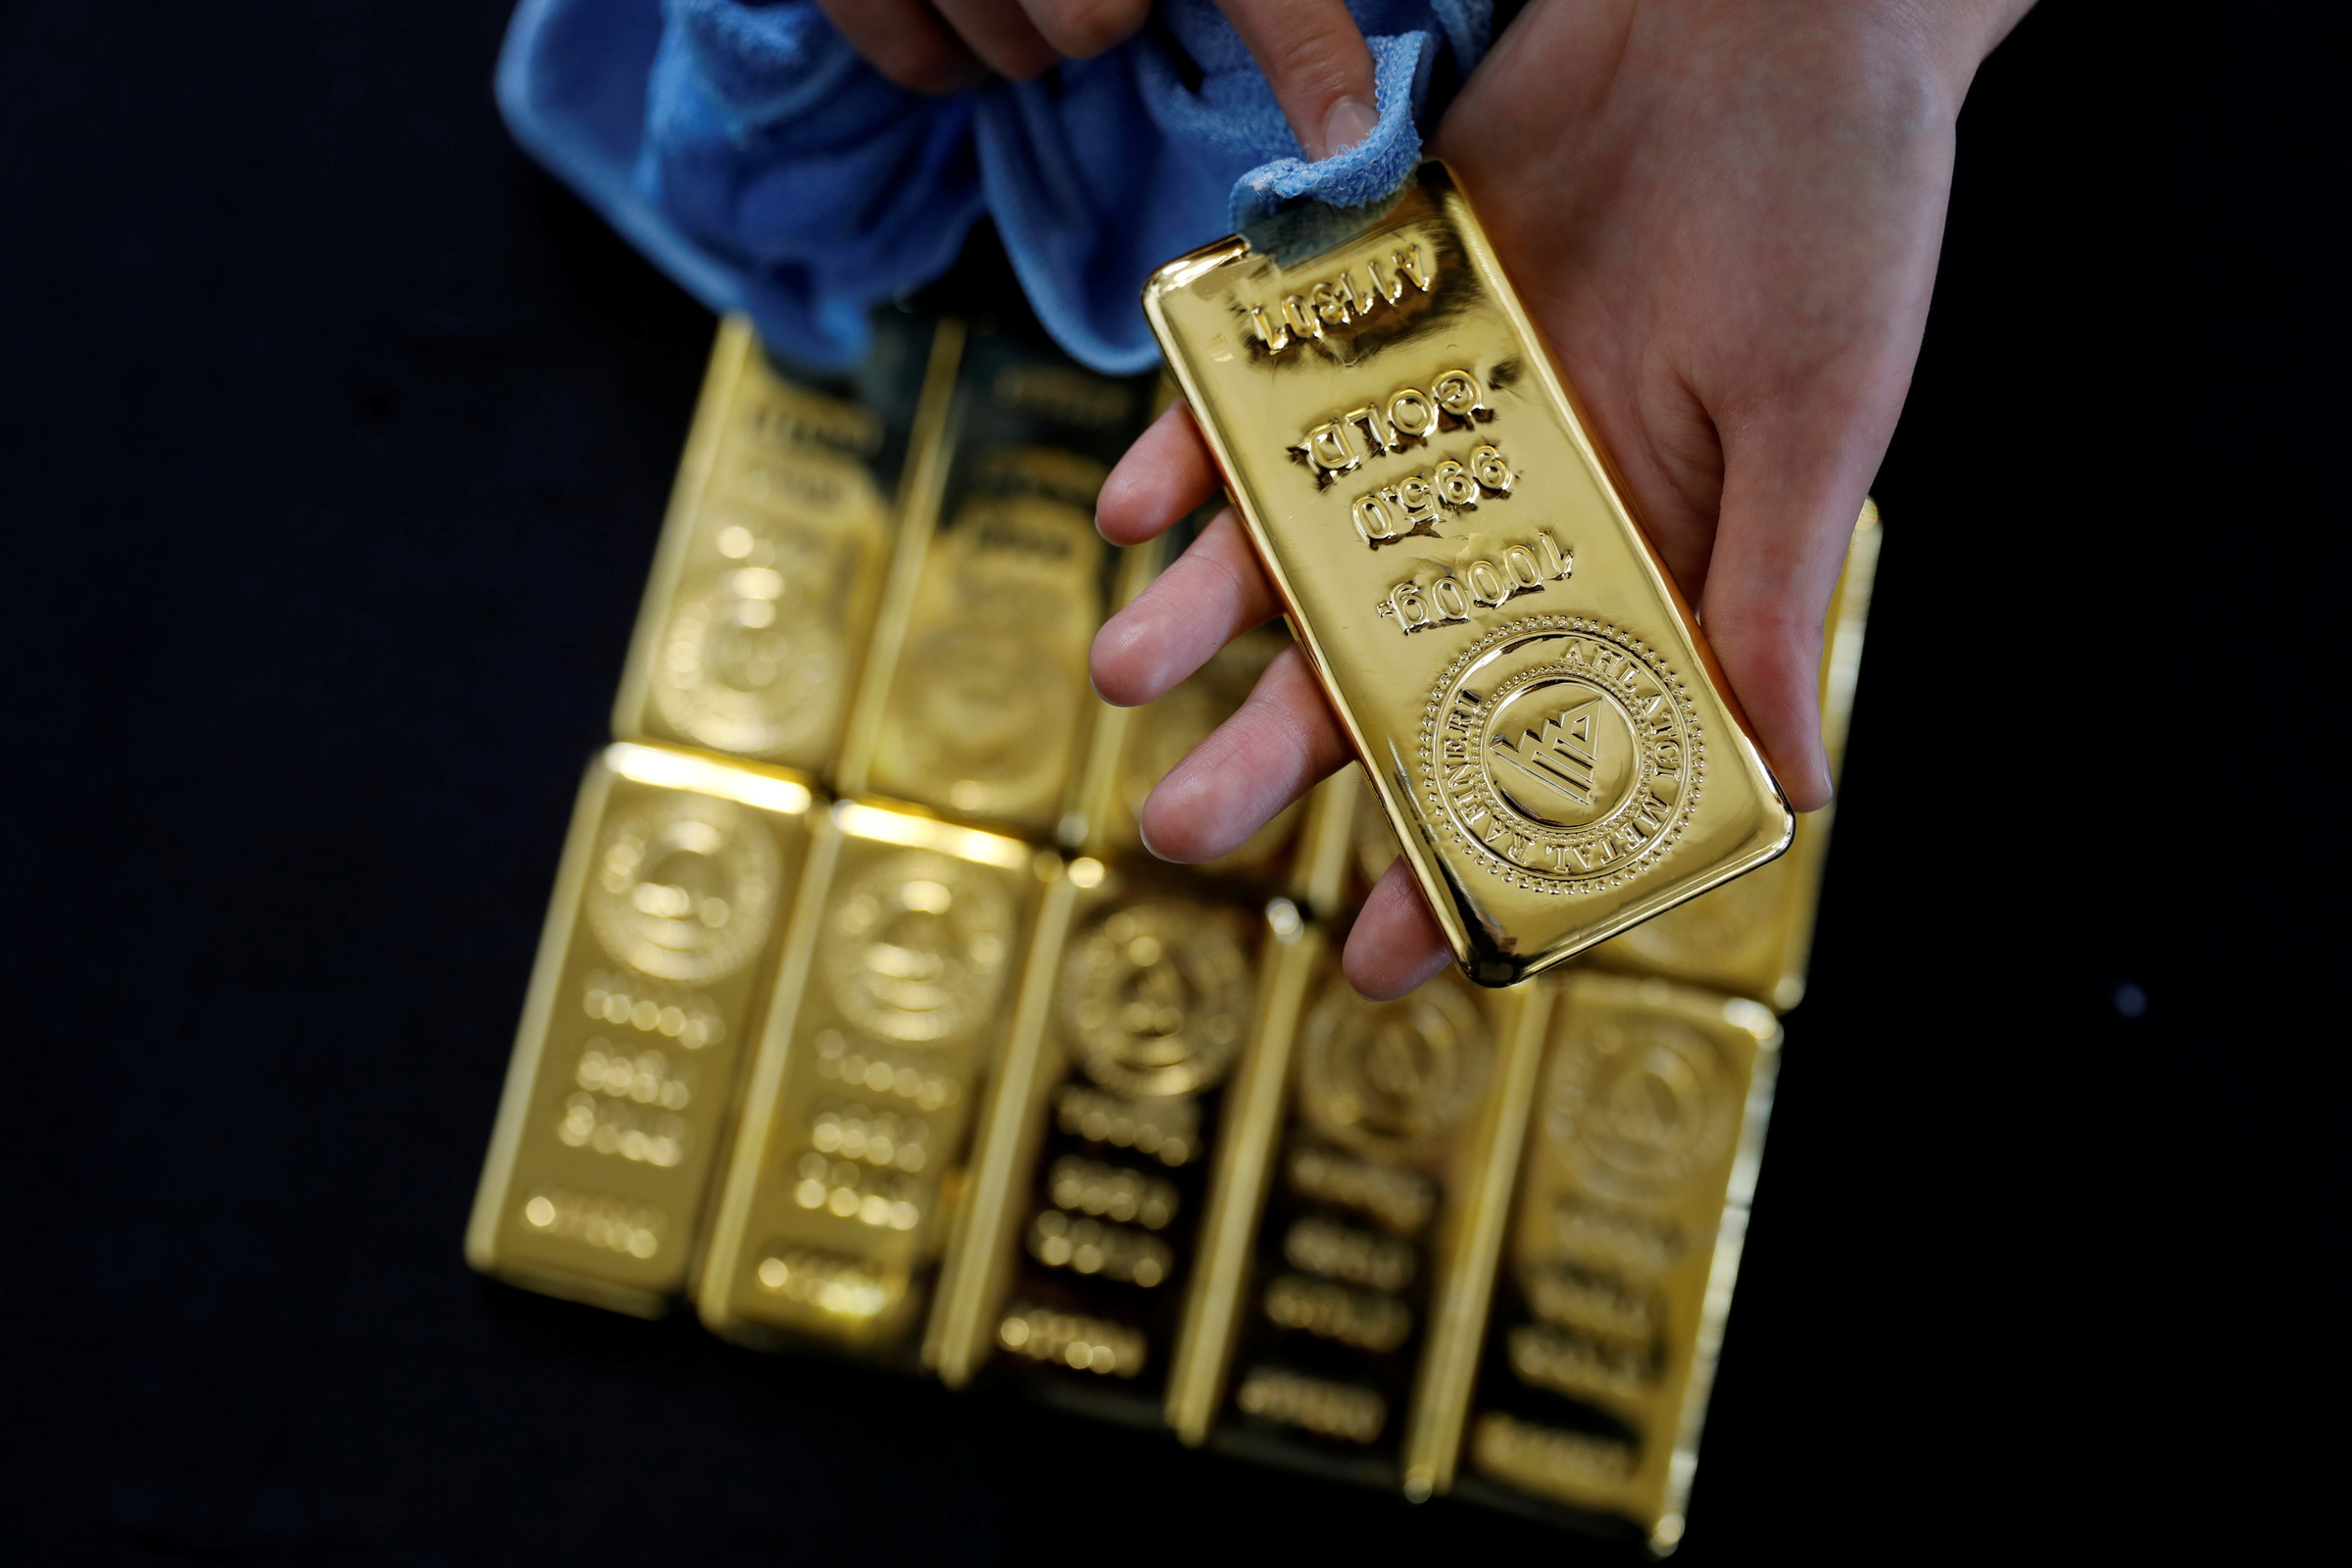 Vàng thỏi tại một nhà máy luyện vàng ở Corum, Thổ Nhĩ Kỳ. Ảnh: Reuters